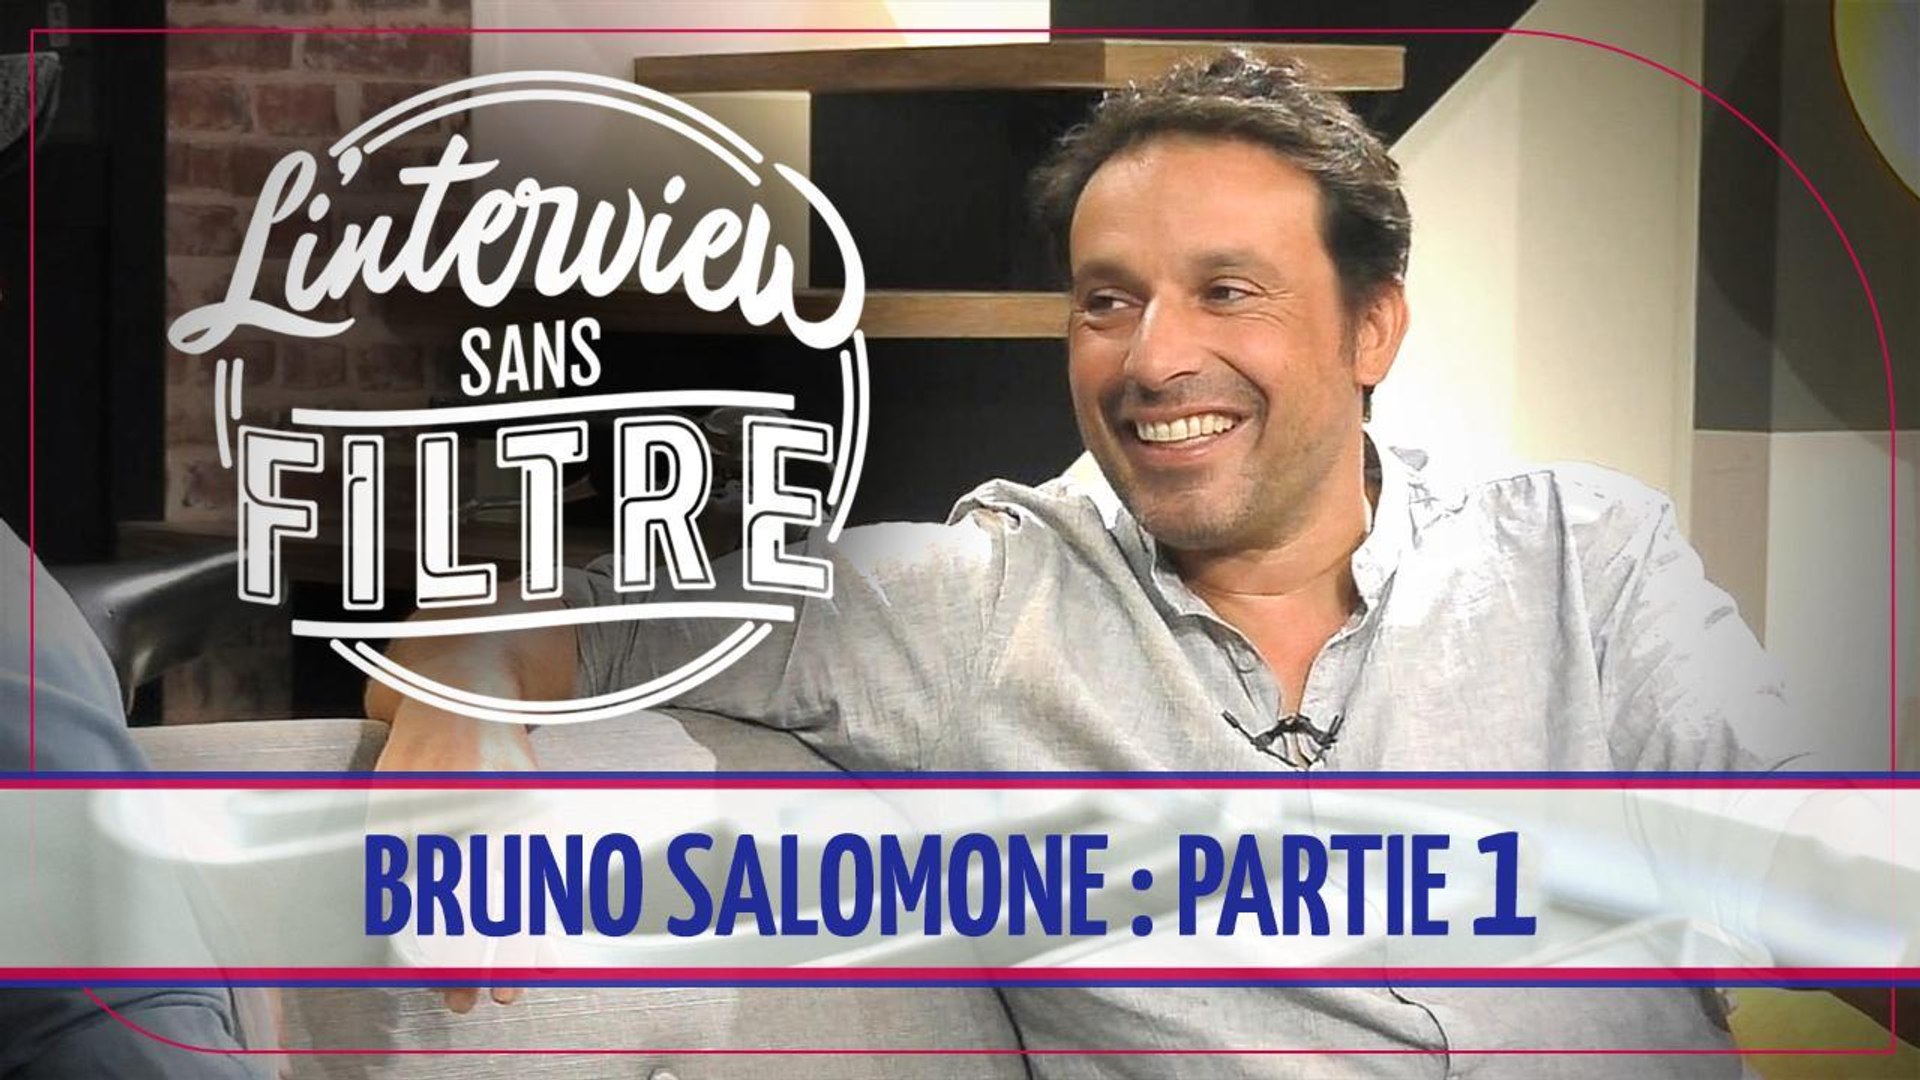 Bruno Salomone : "Le succès de Jean Dujardin m'a porté" - Vidéo Dailymotion